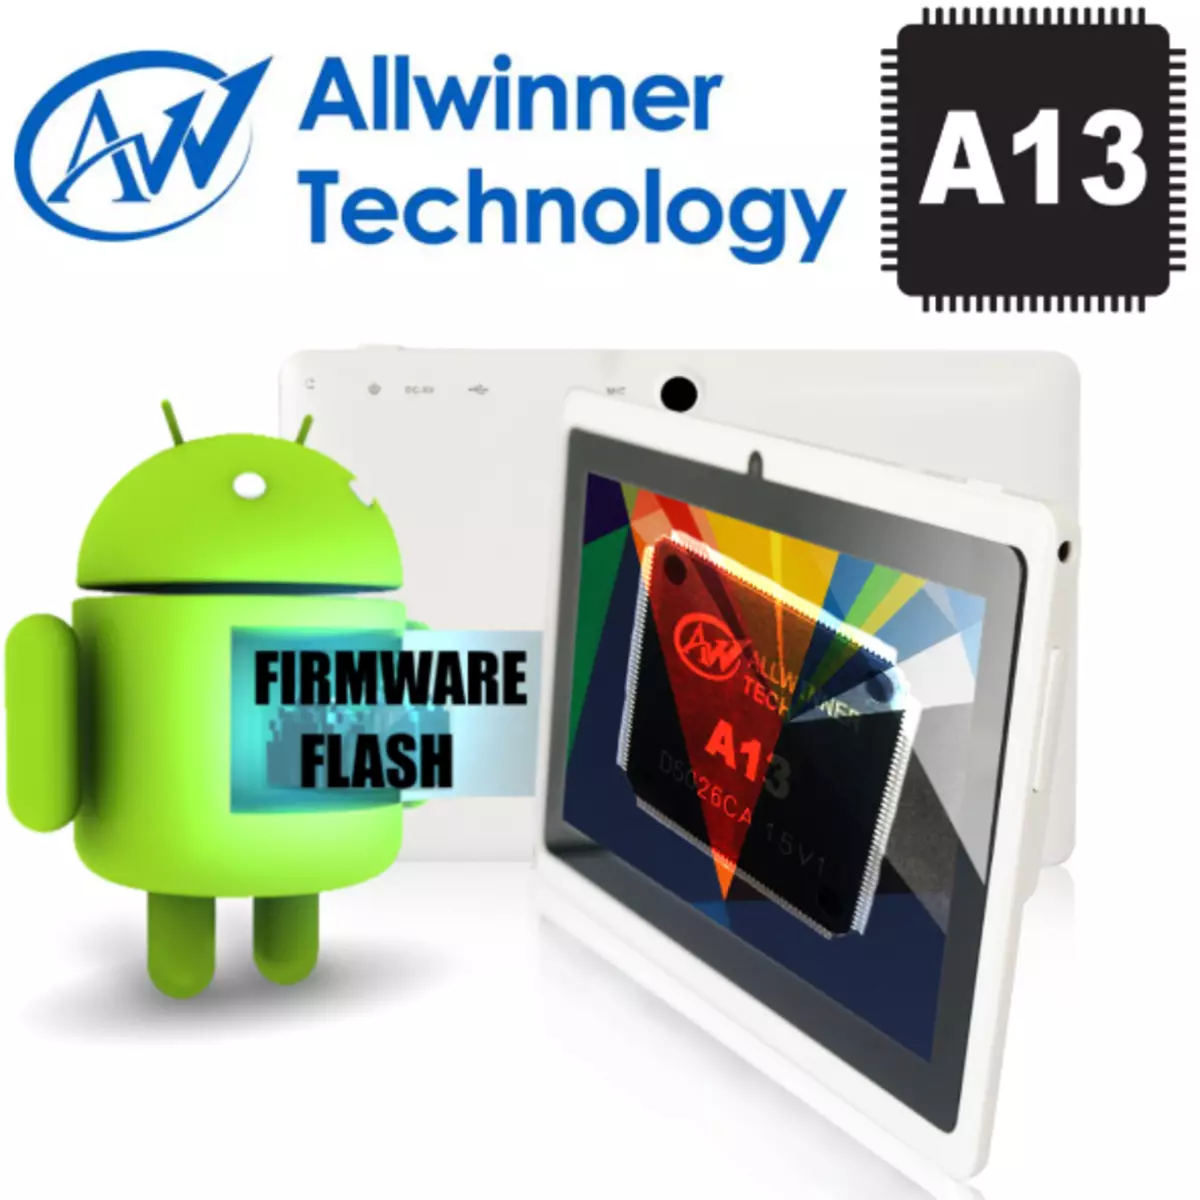 Allwinner A13 Firmware